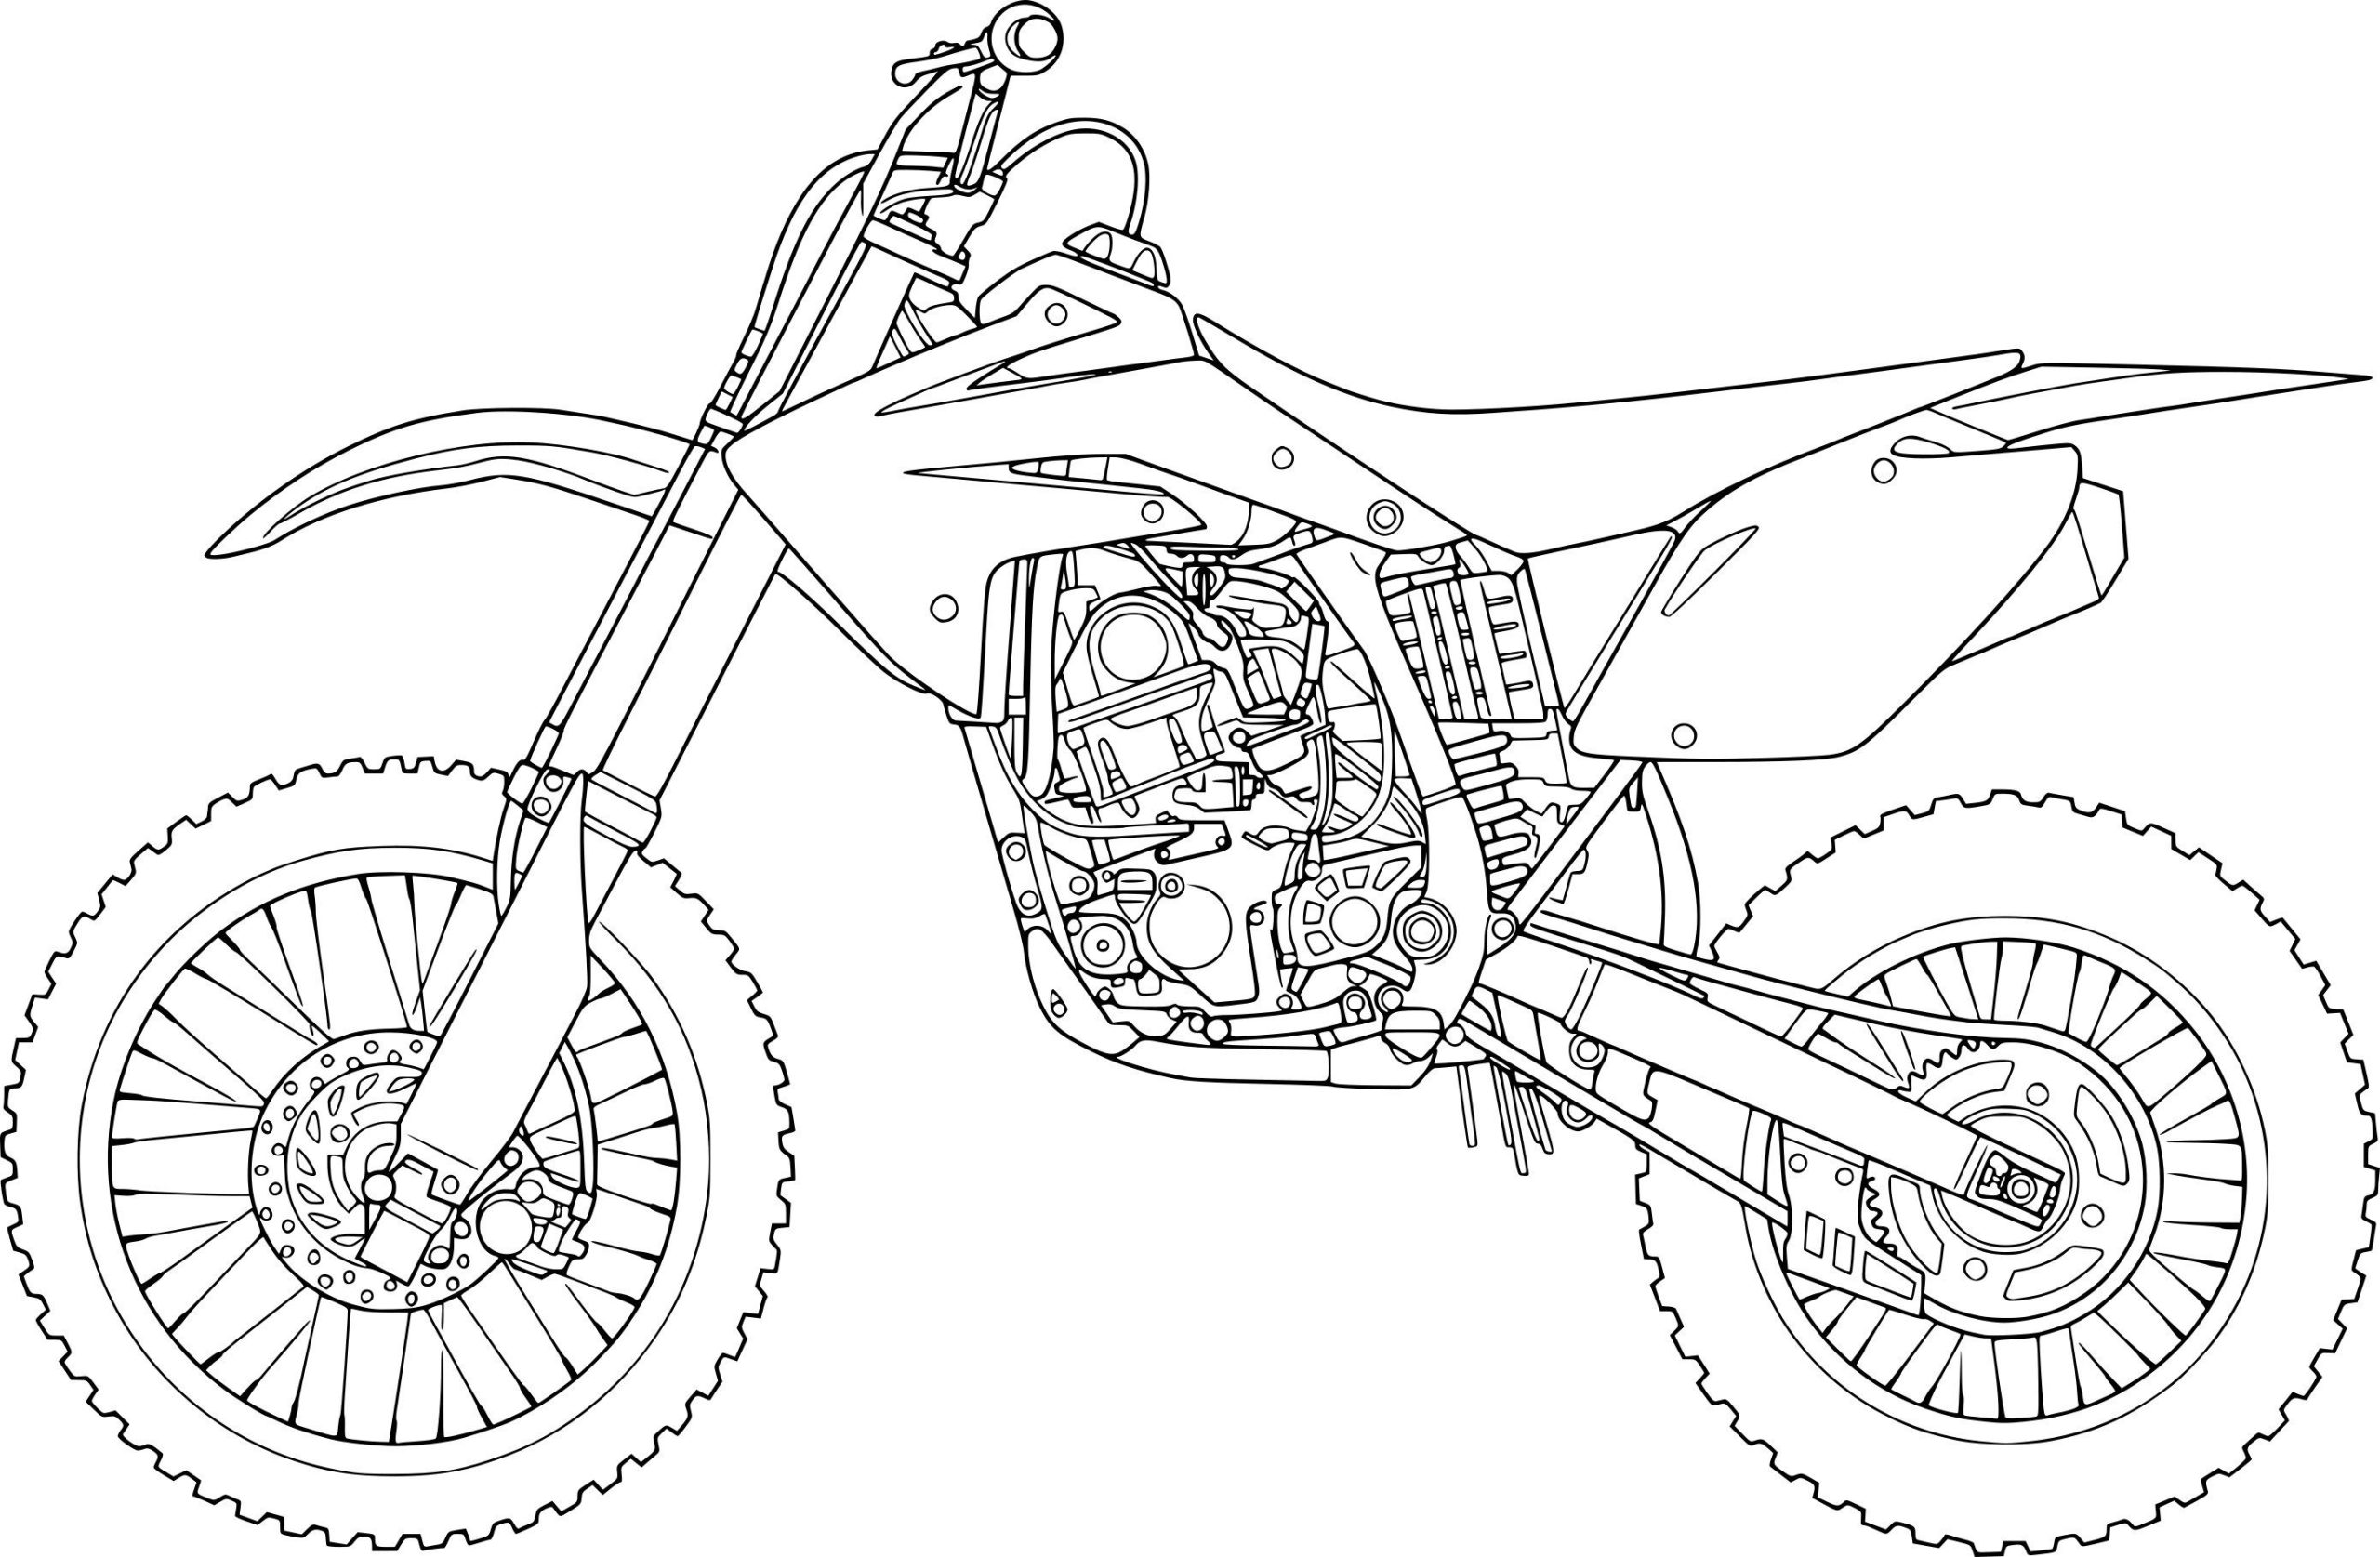 КТМ кроссовый мотоцикл чертеж